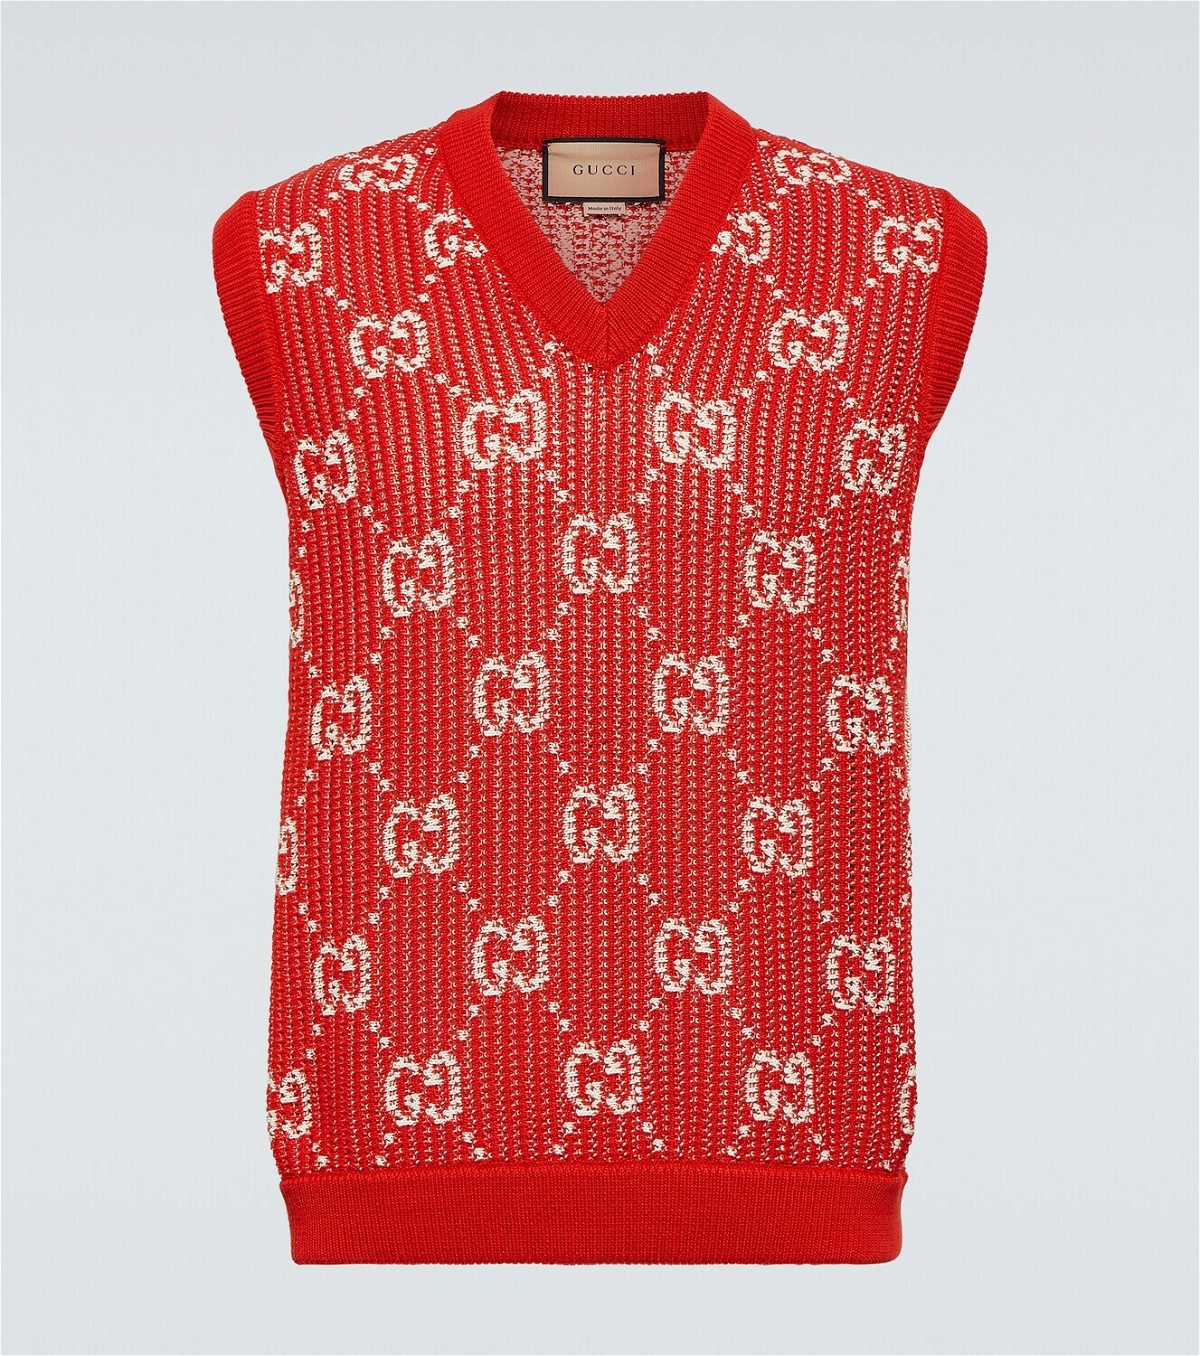 Gucci GG jacquard cotton sweater vest